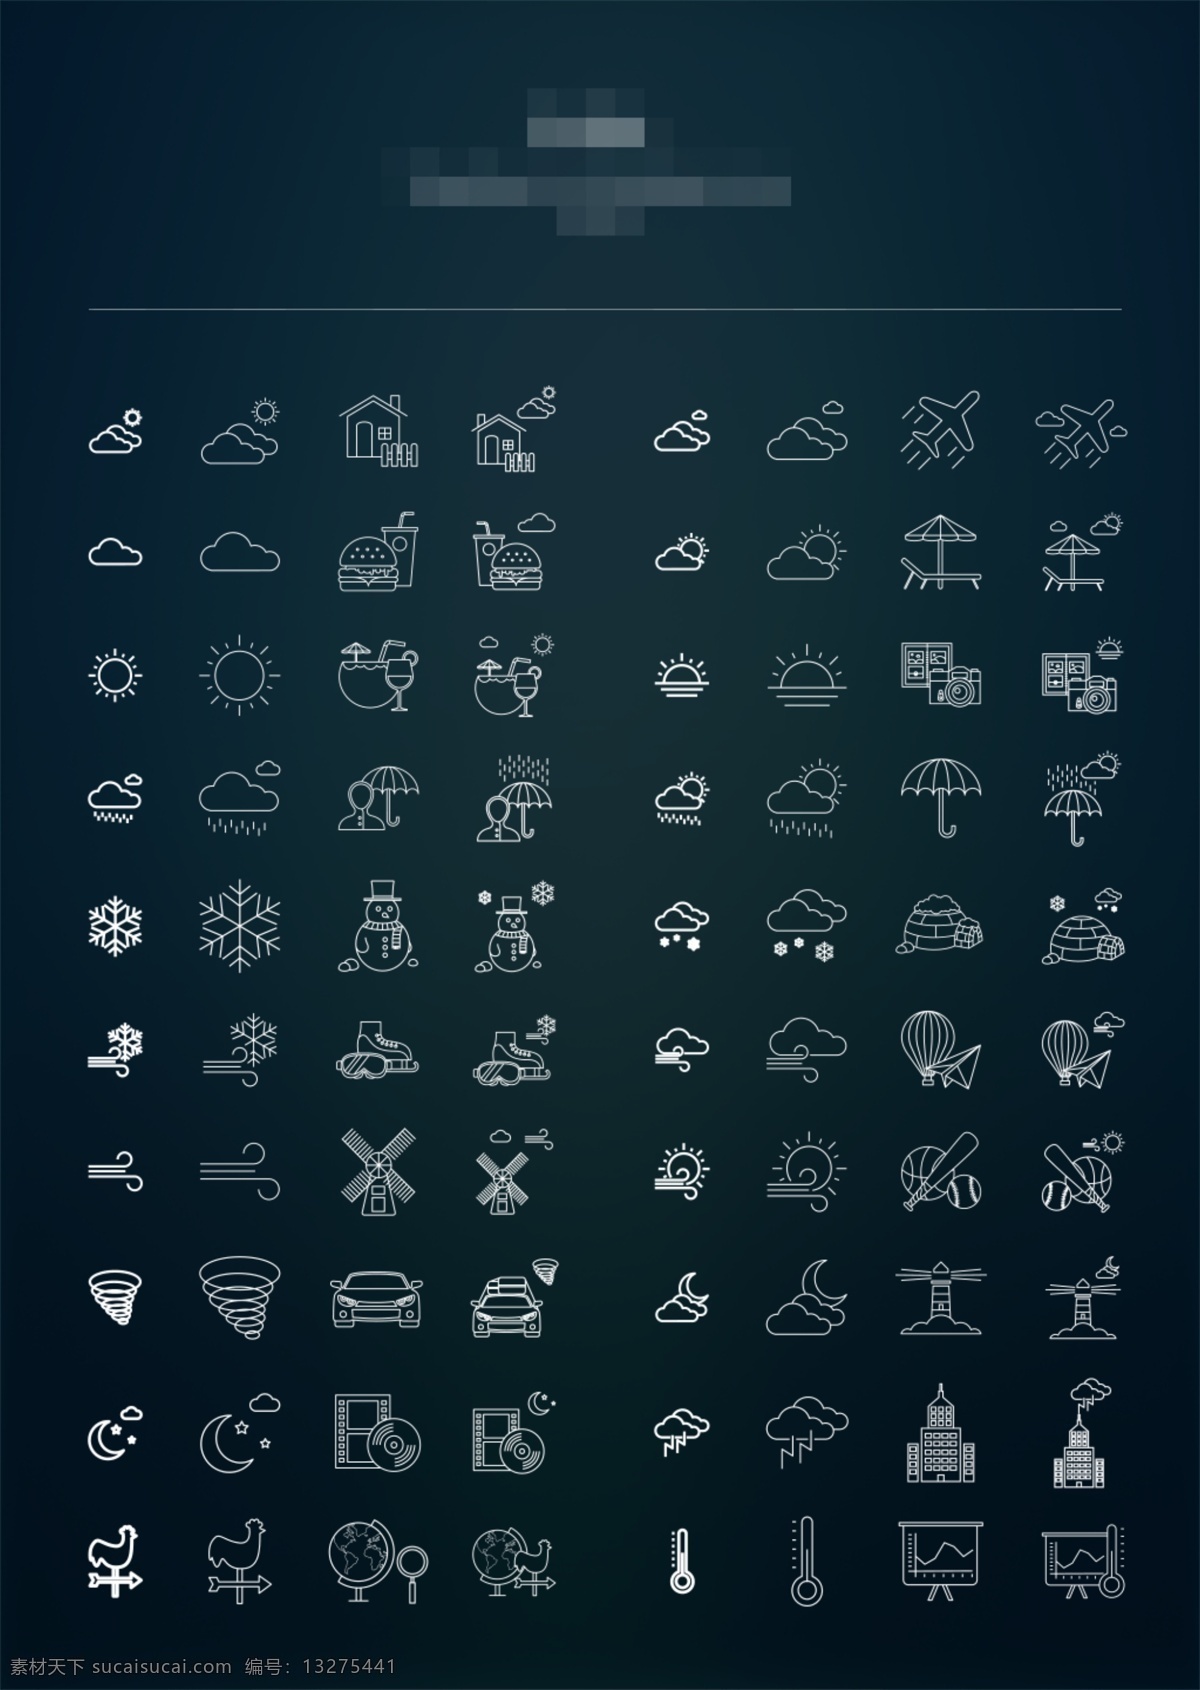 天气 网页 ui 图标 icon 网页icon icon设计 icons 图标设计 网页图标 天气图标 天气控件 太阳图标 龙卷风 伞 温度计 风 雨